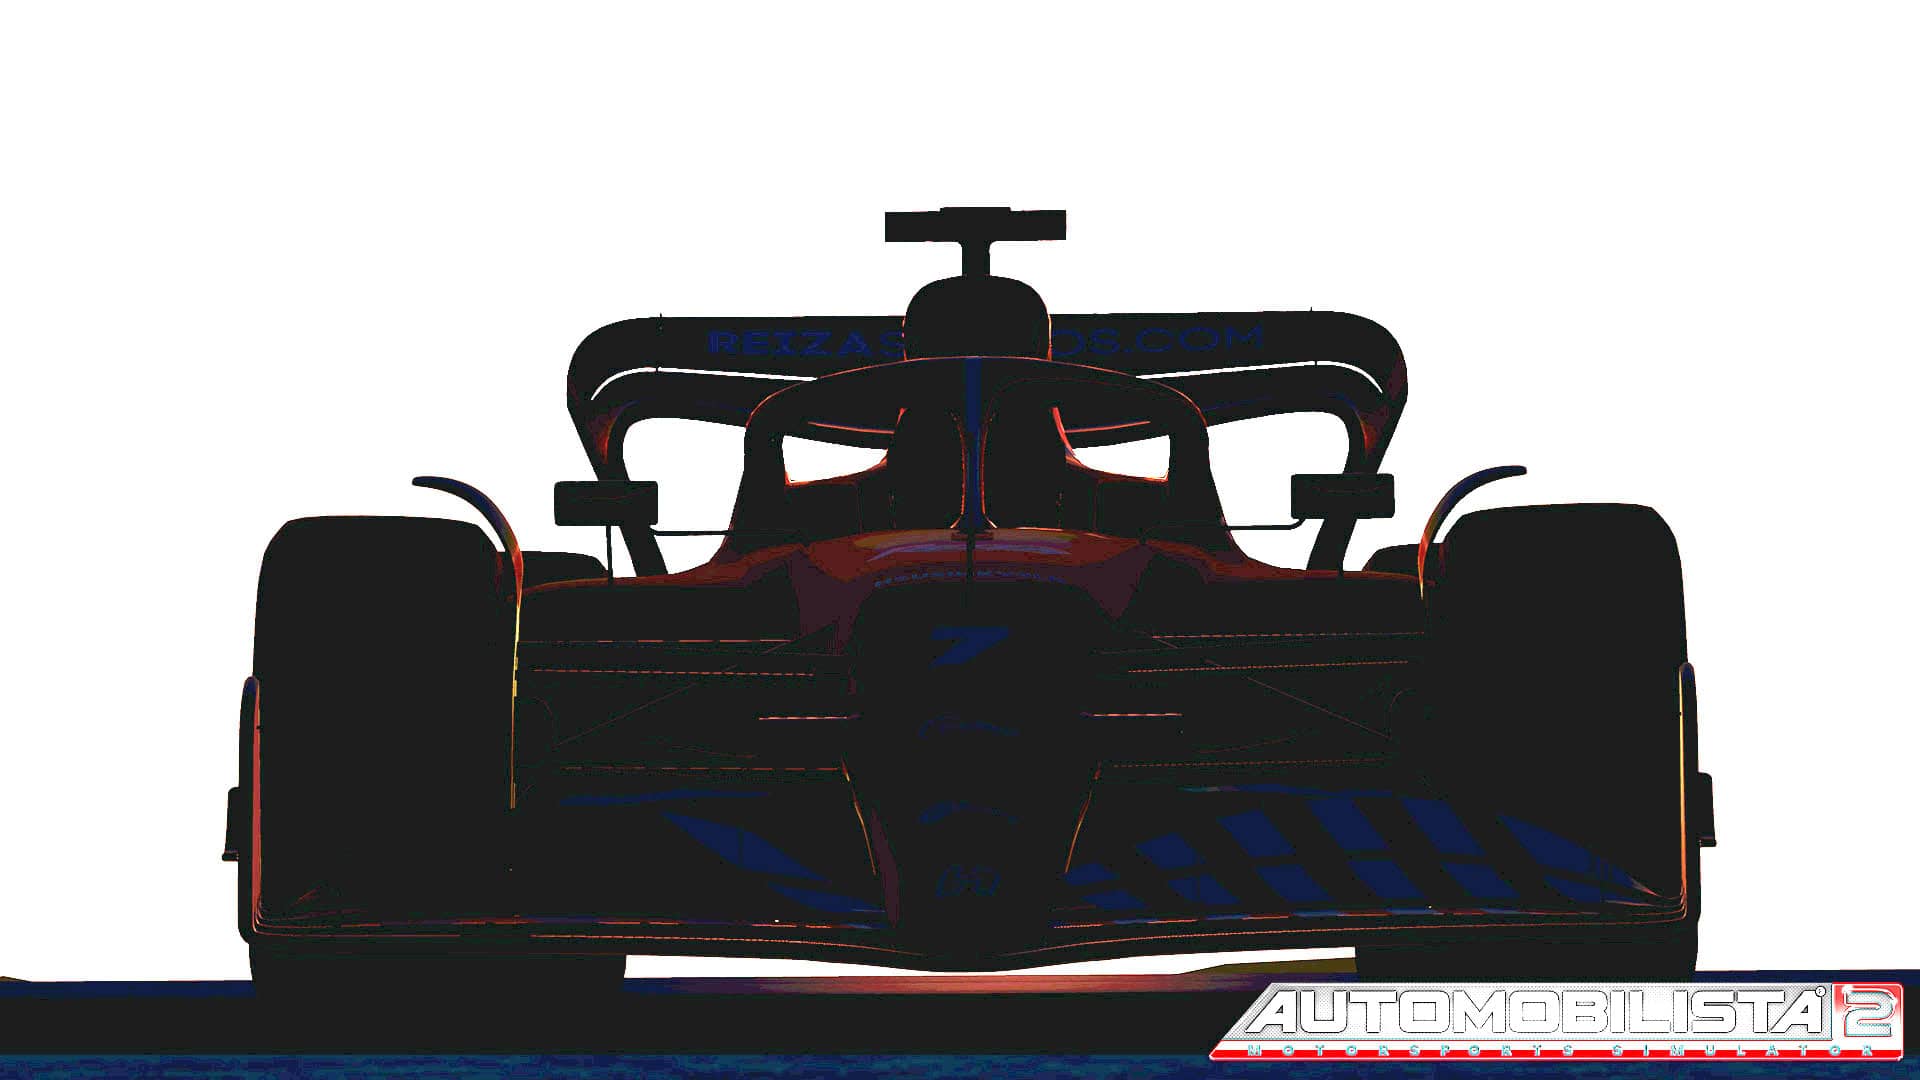 Formula 1 2022 revealed Automobilista 2